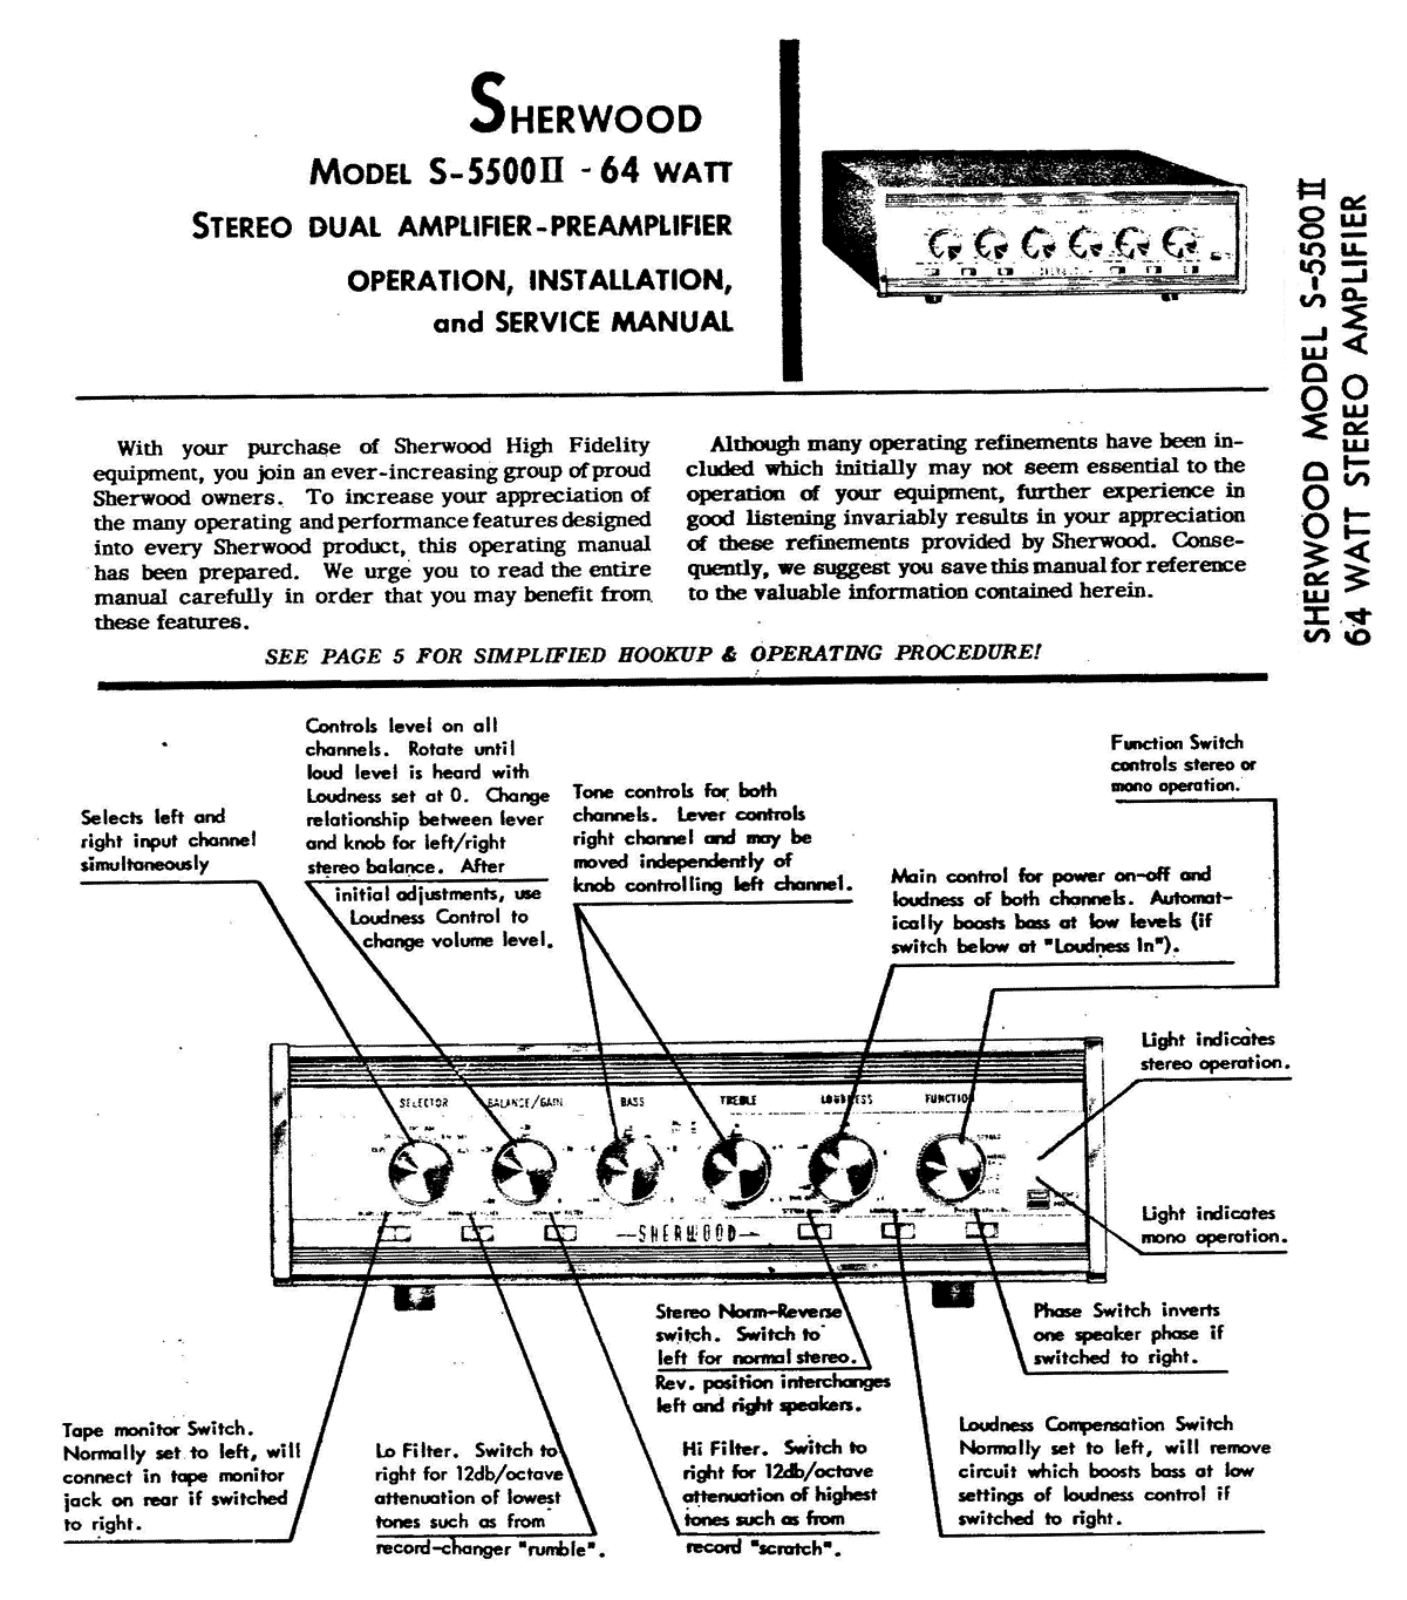 Sherwood S-5500-II Service Manual